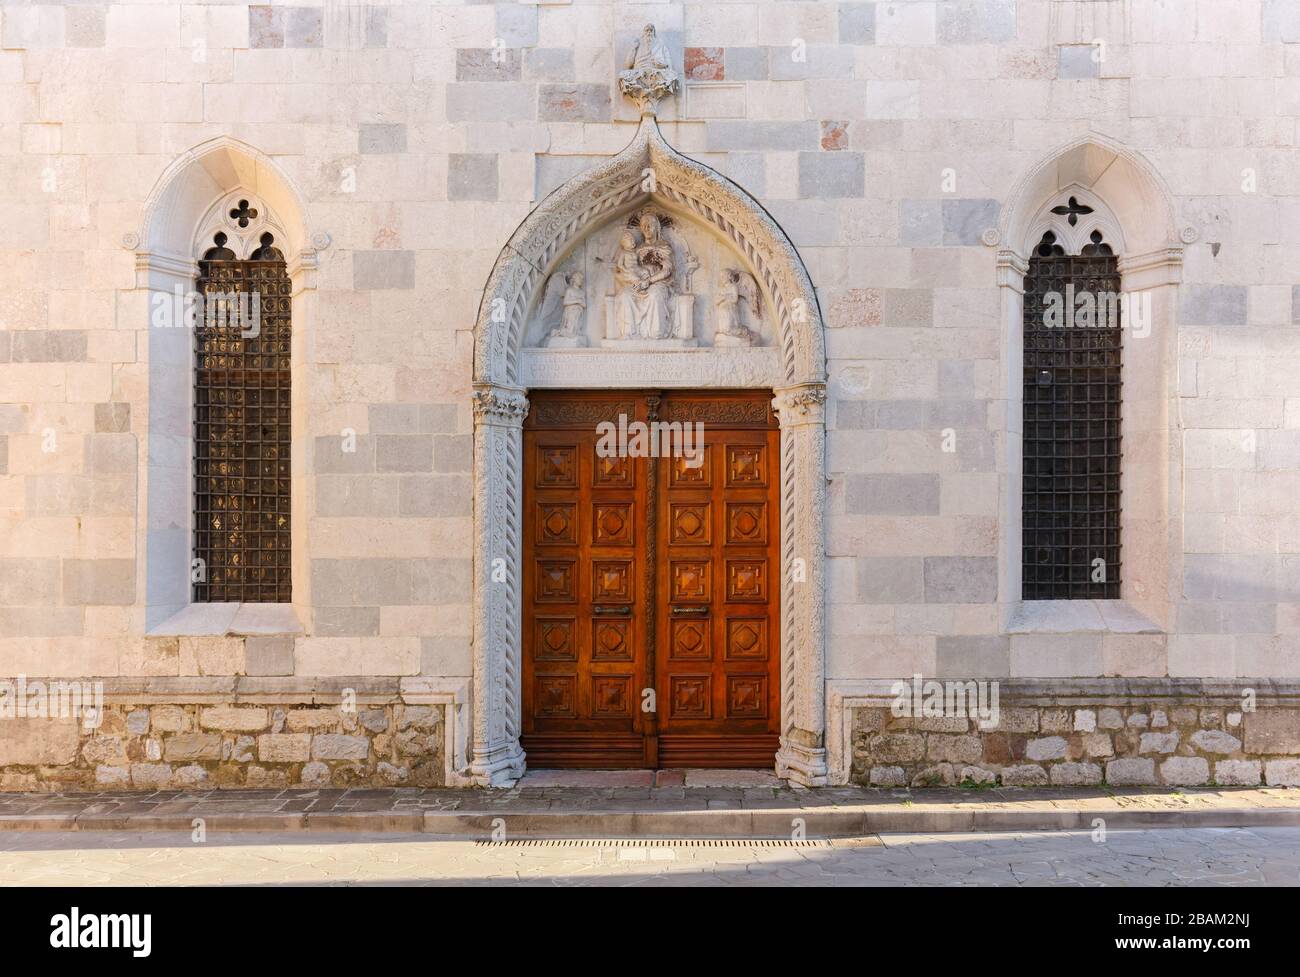 Entrance of che catholic church of Santa Maria della Fratta in San Daniele del Friuli, Italy Stock Photo